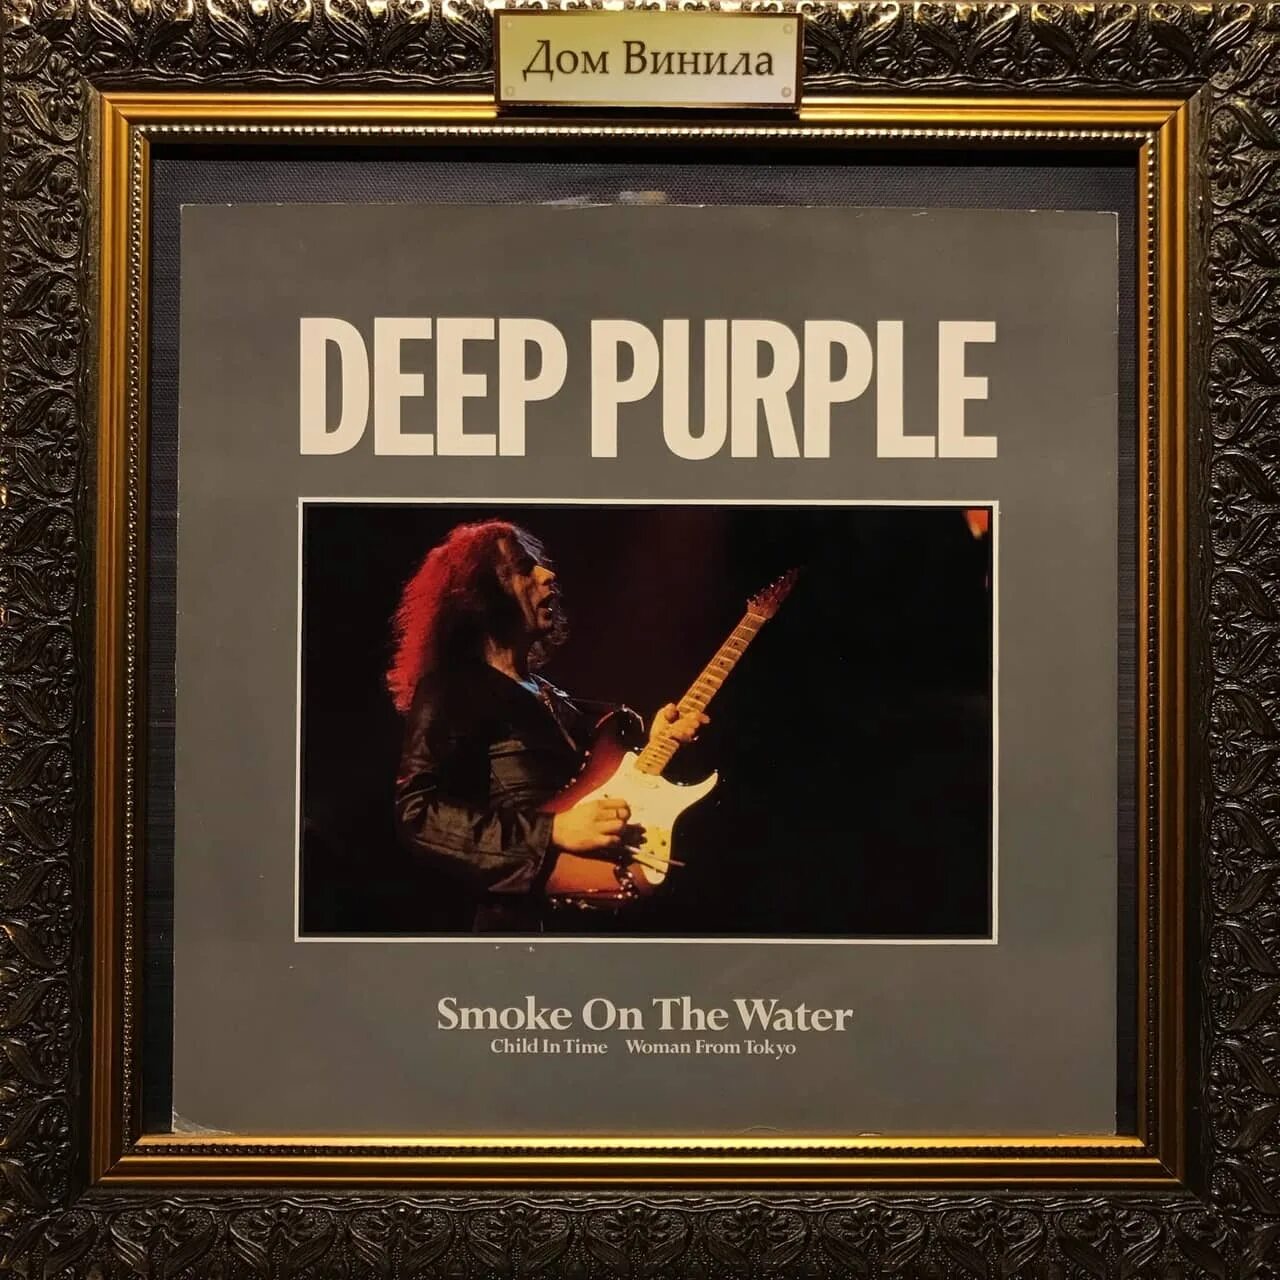 Дитя во времени дип. Deep Purple 1985. Deep Purple child in time обложка. Виниловая пластинка Deep Purple Smoke. Deep Purple woman from Tokyo.